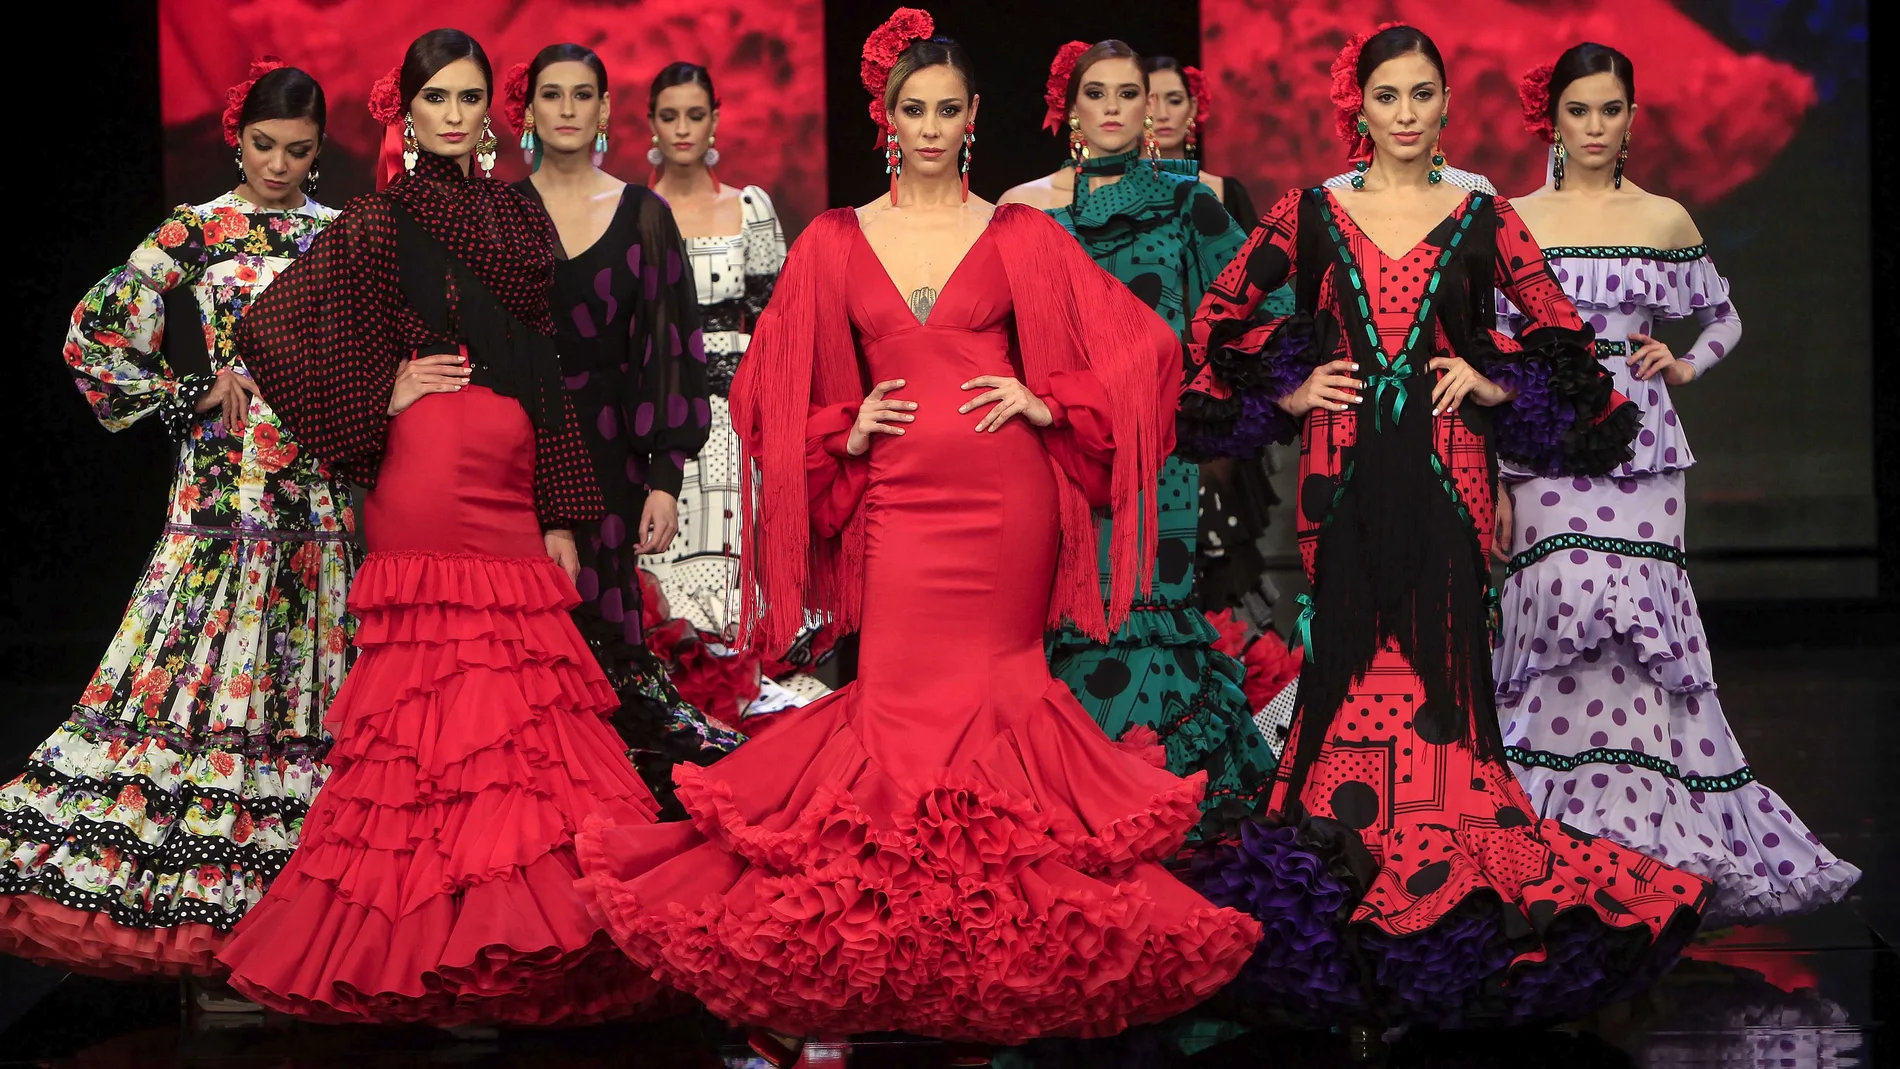 El por de la moda flamenca exporta